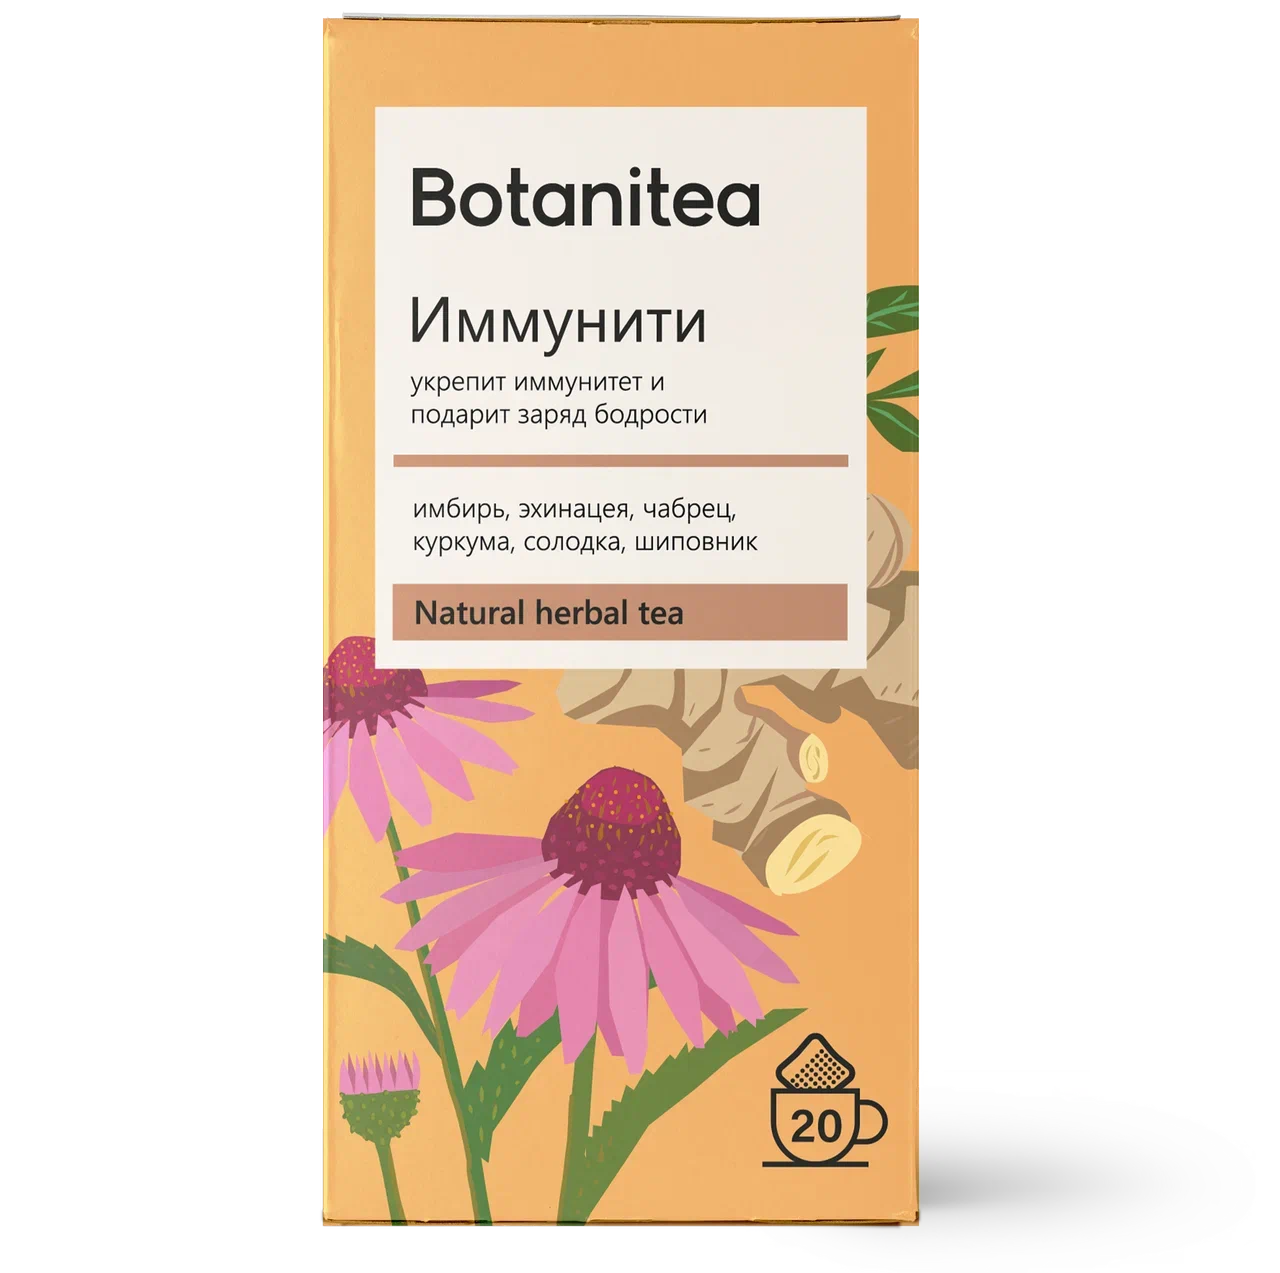 Botanitea. Иммунити botanitea. Чай травяной Biopractika. Чай травяной botanitea. Травяной чай Биопрактика Biopractika botanitea релакс.